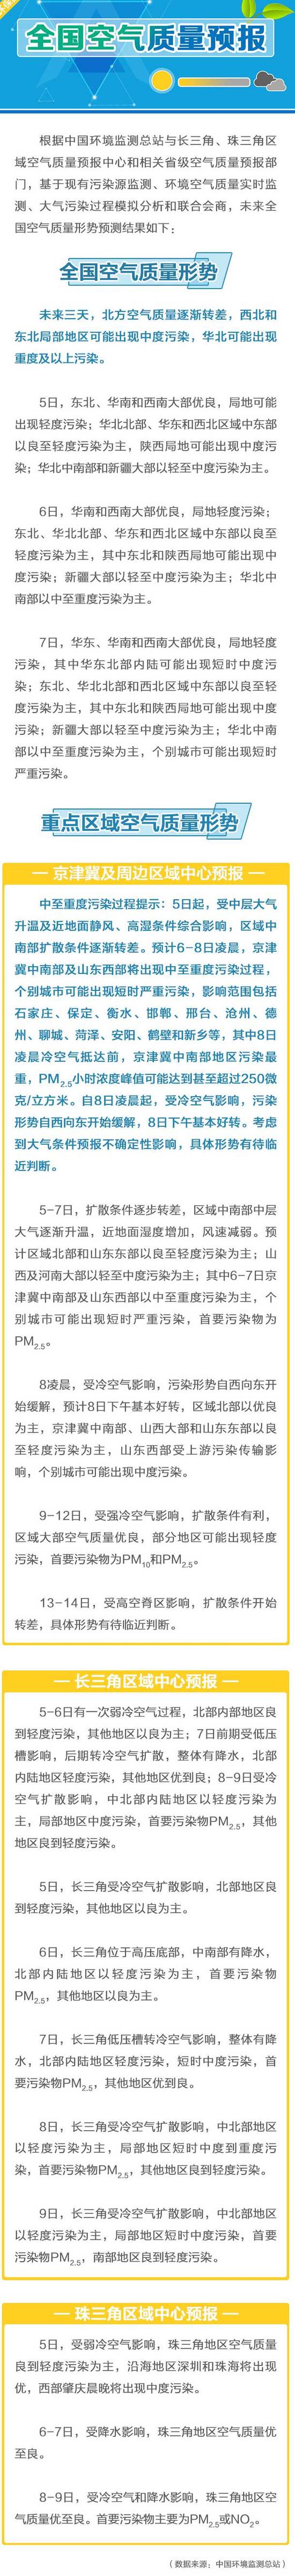 中国新闻网:环保部:未来3天北方空气质量转差 华北或现重污染